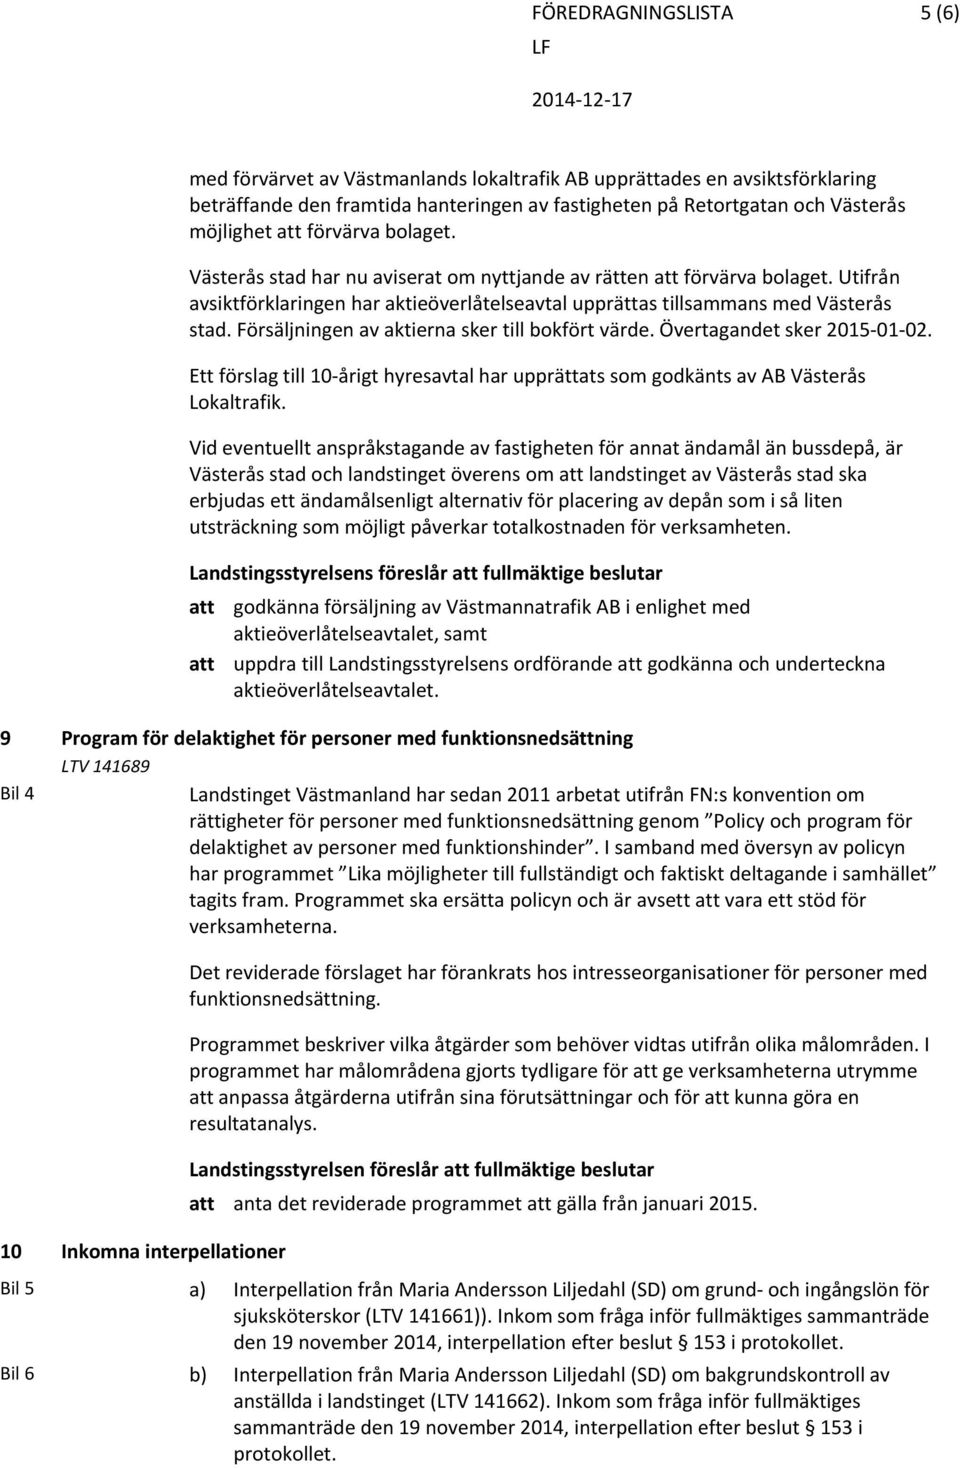 Försäljningen av aktierna sker till bokfört värde. Övertagandet sker 2015 01 02. Ett förslag till 10 årigt hyresavtal har upprättats som godkänts av AB Västerås Lokaltrafik.